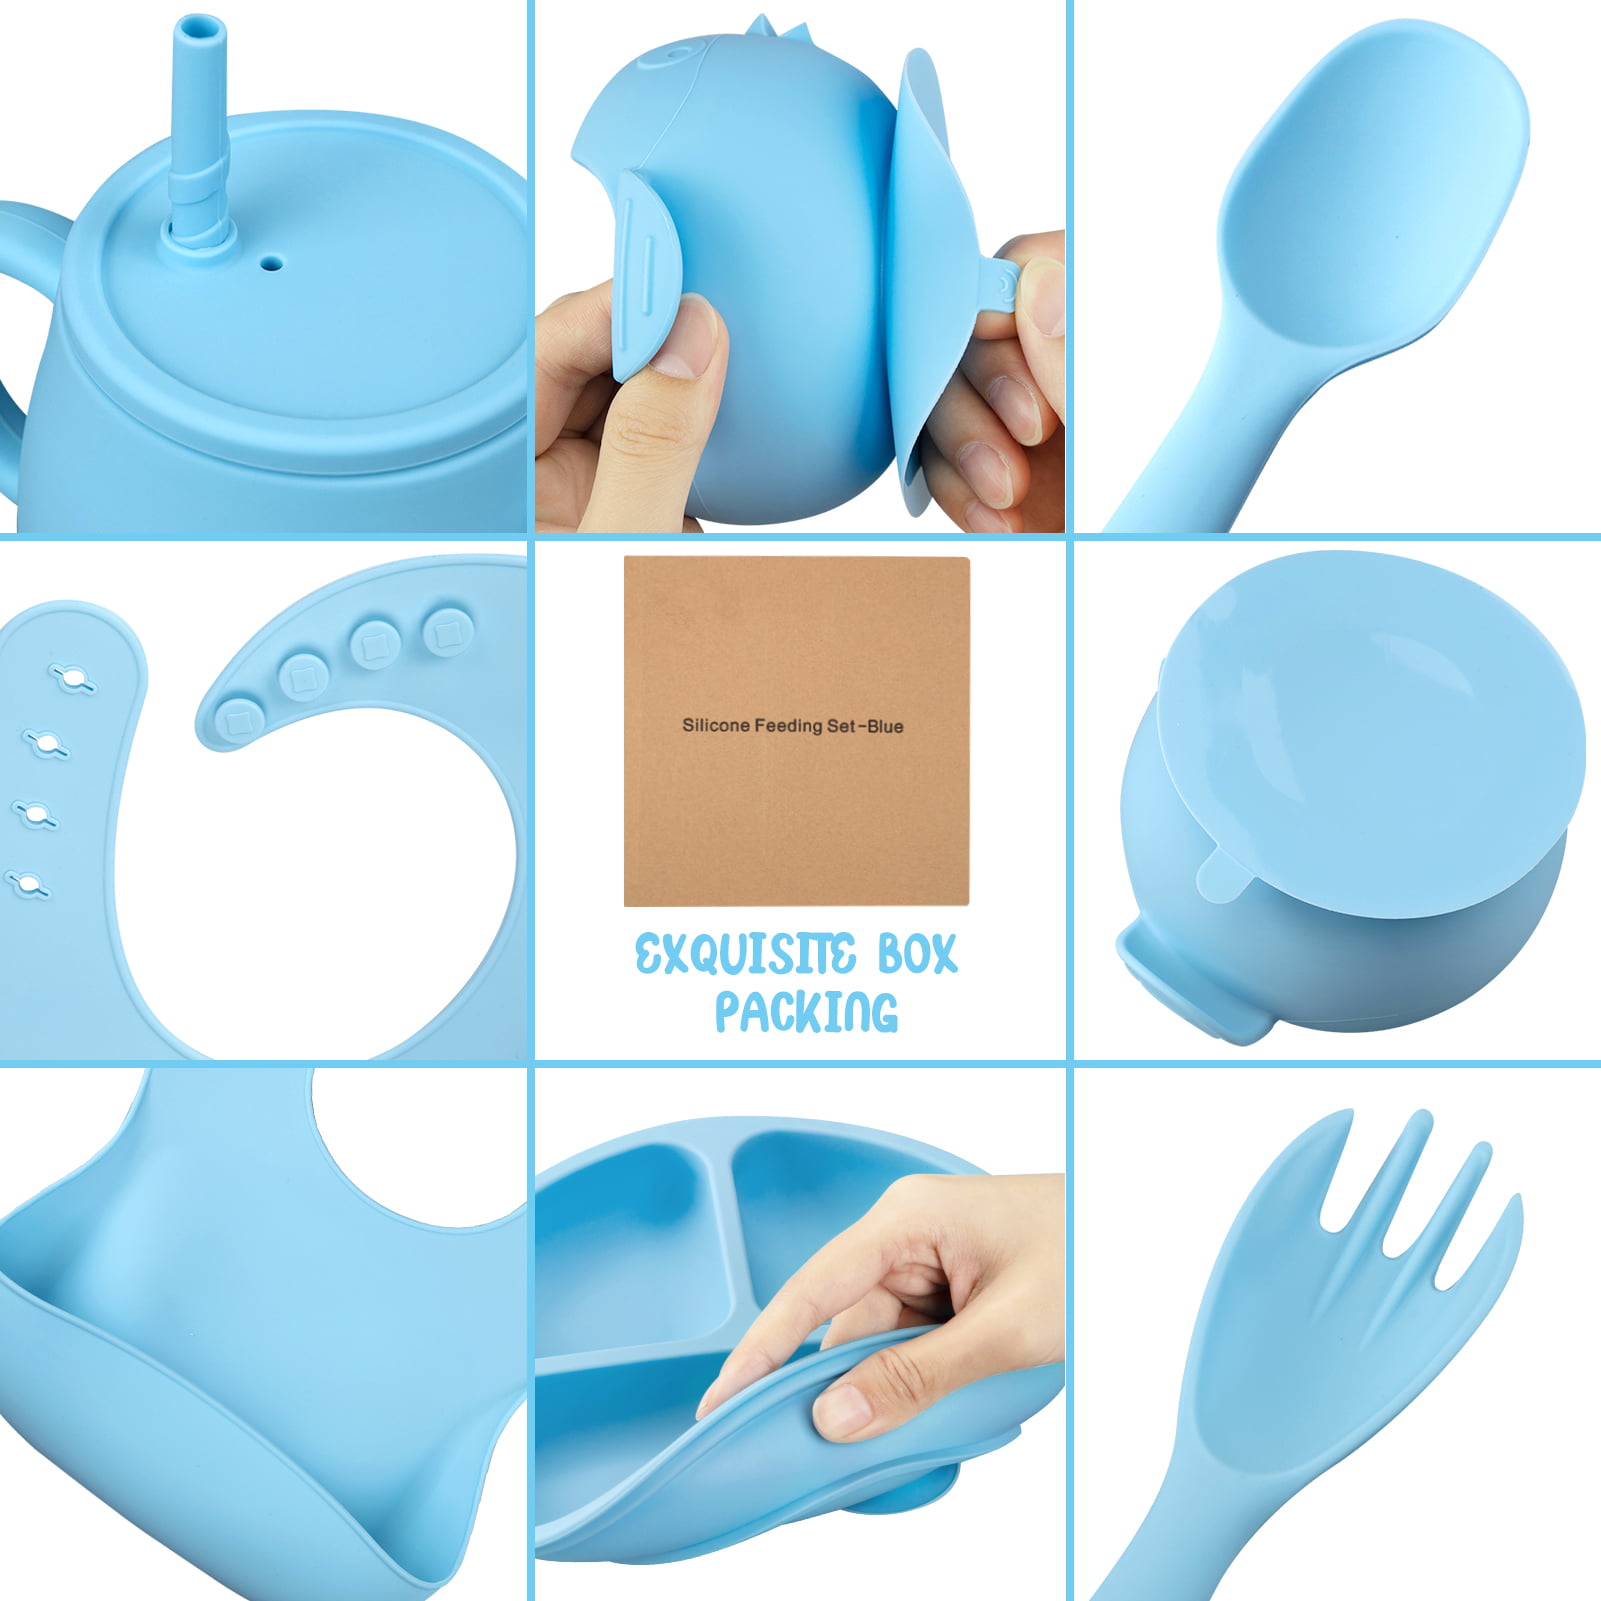 10-Piece Silicone Baby Feeding Set - Blue